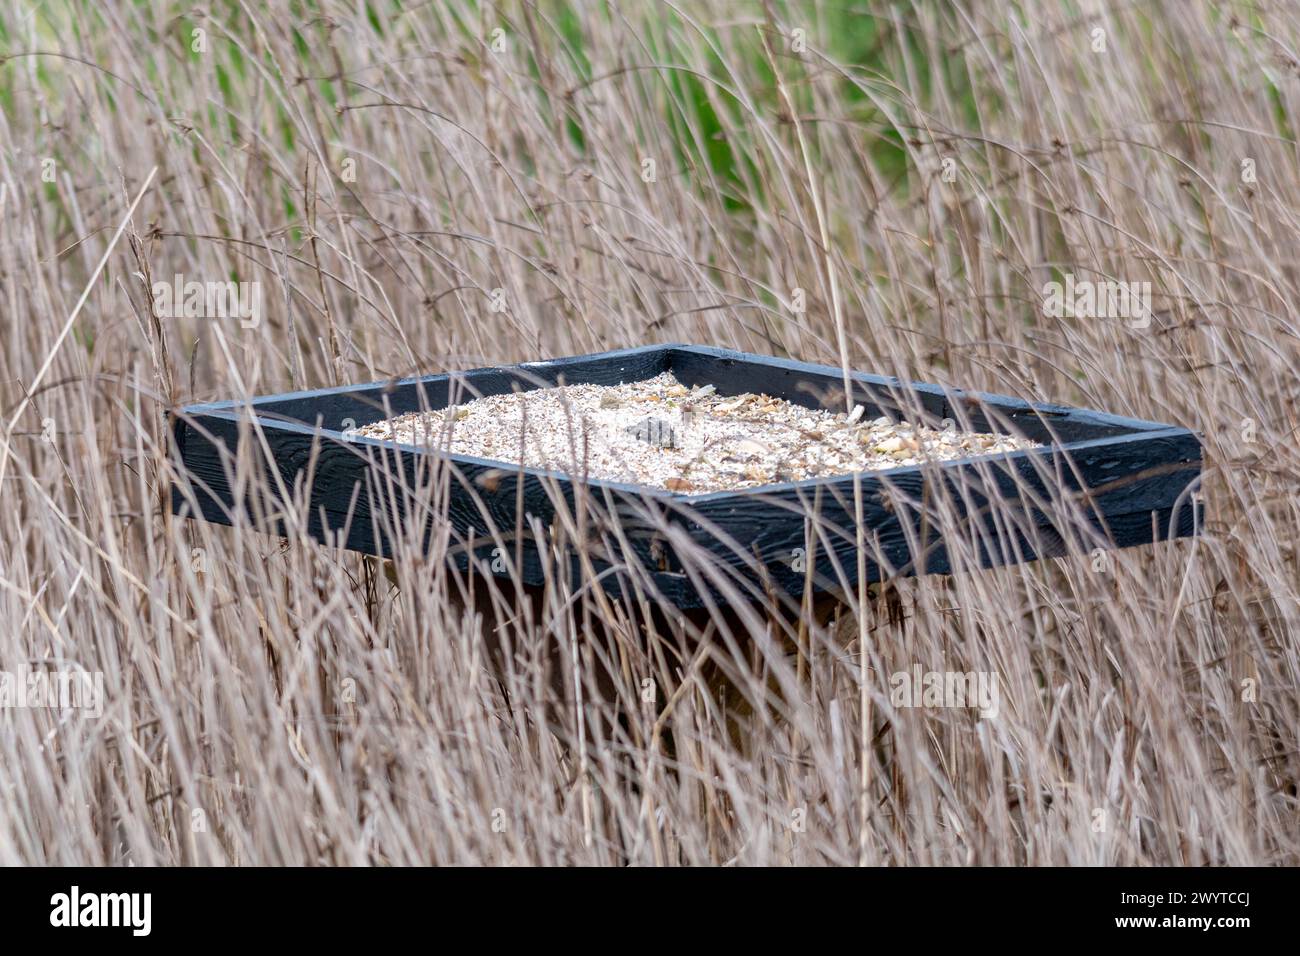 Il vassoio di graniglia posta tra i reedbed per facilitare la digestione degli uccelli, aiuta a macinare i semi nel raccolto degli uccelli Foto Stock